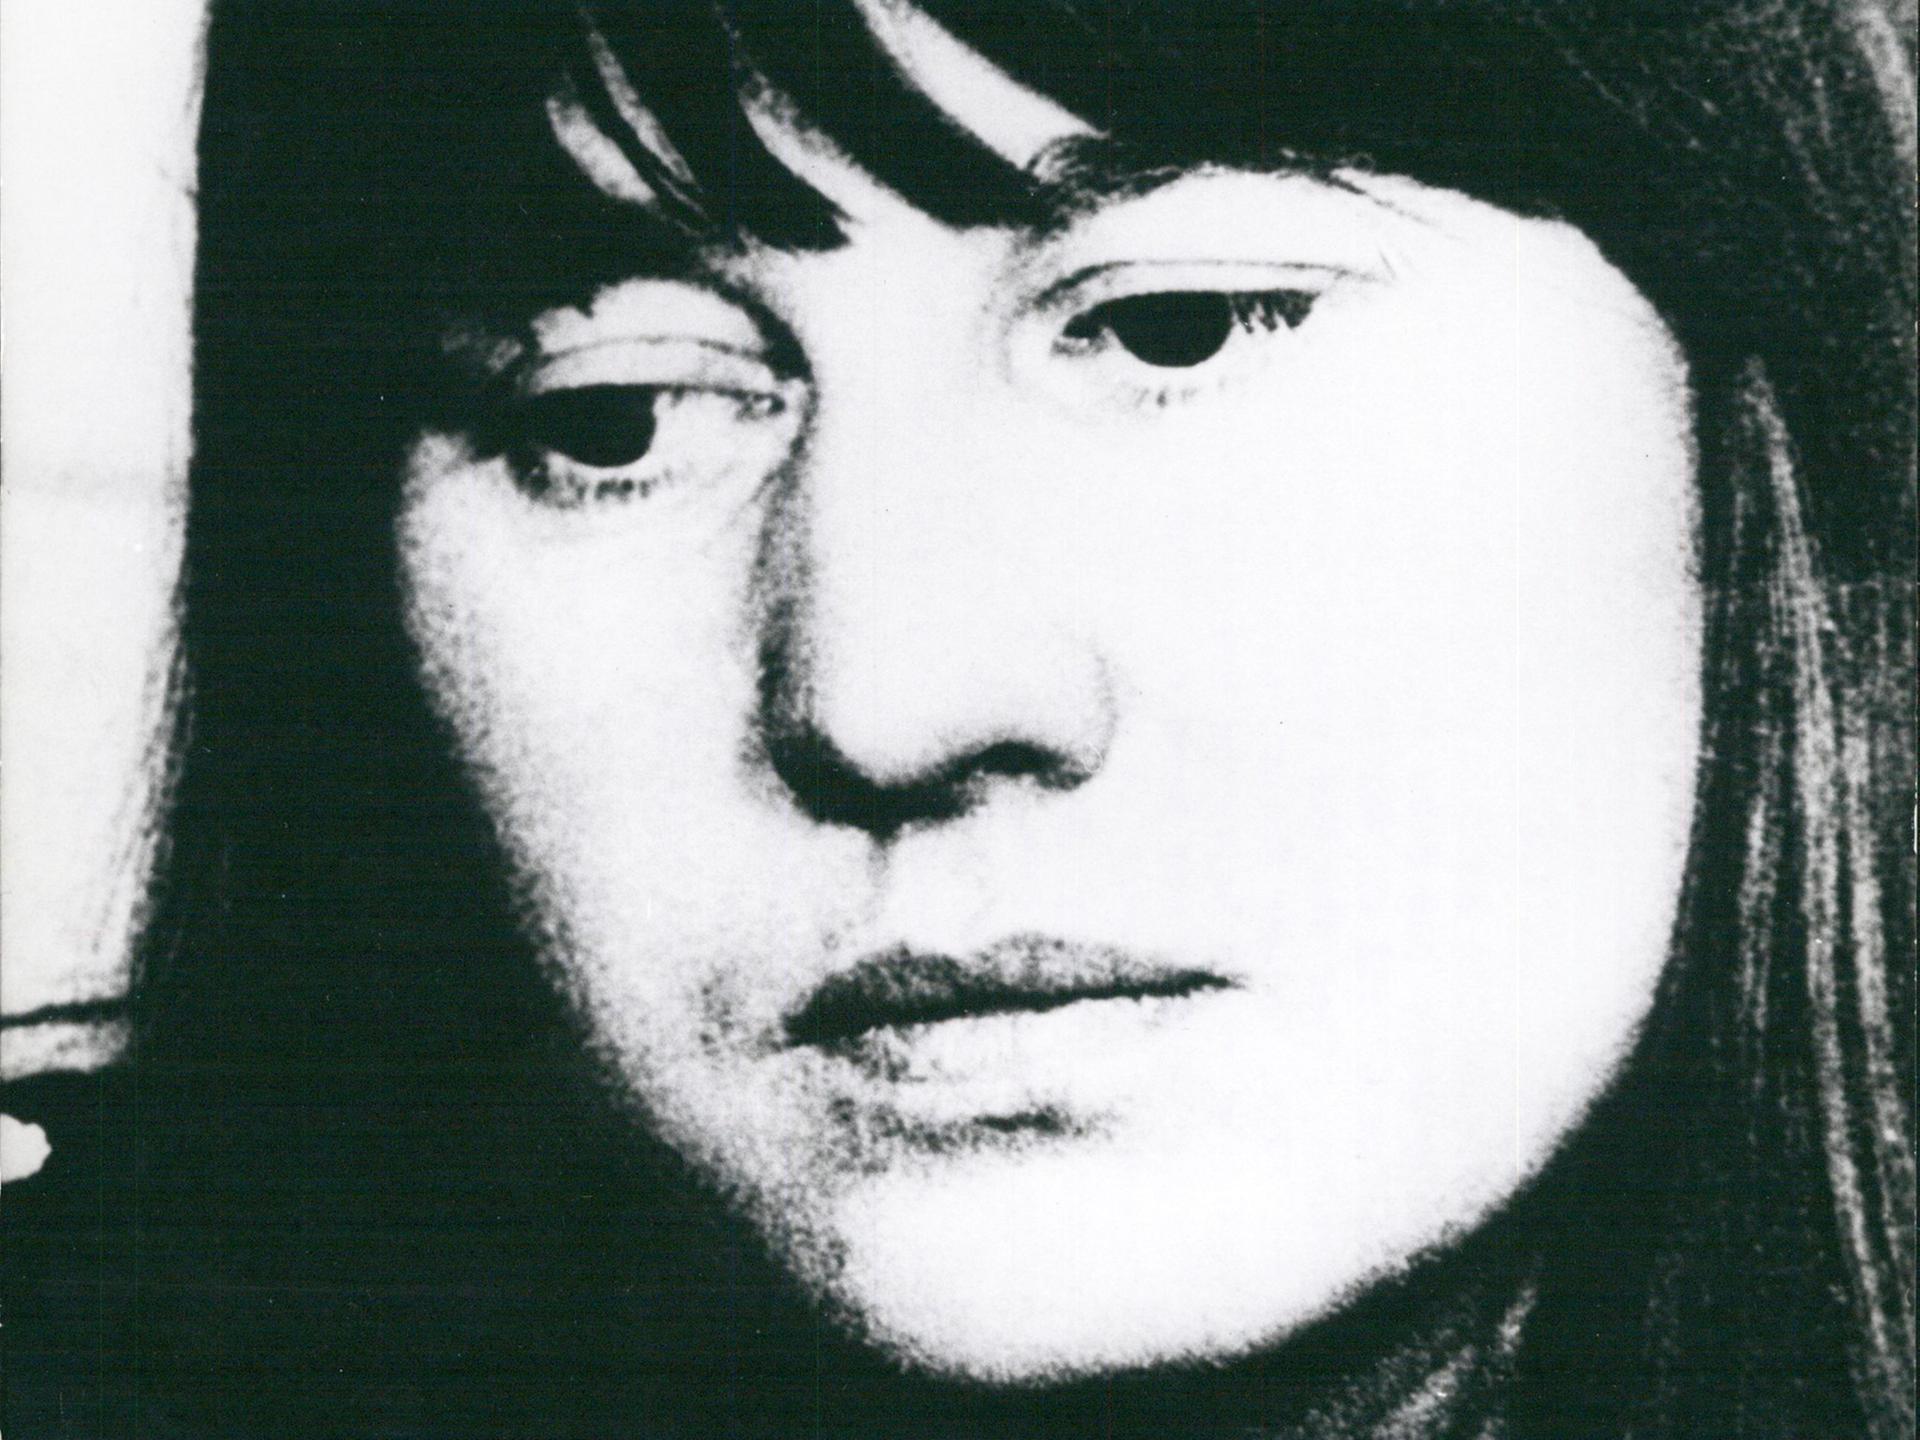 Schwarzweiß-Porträt von Ulrike Meinhof, 1972.